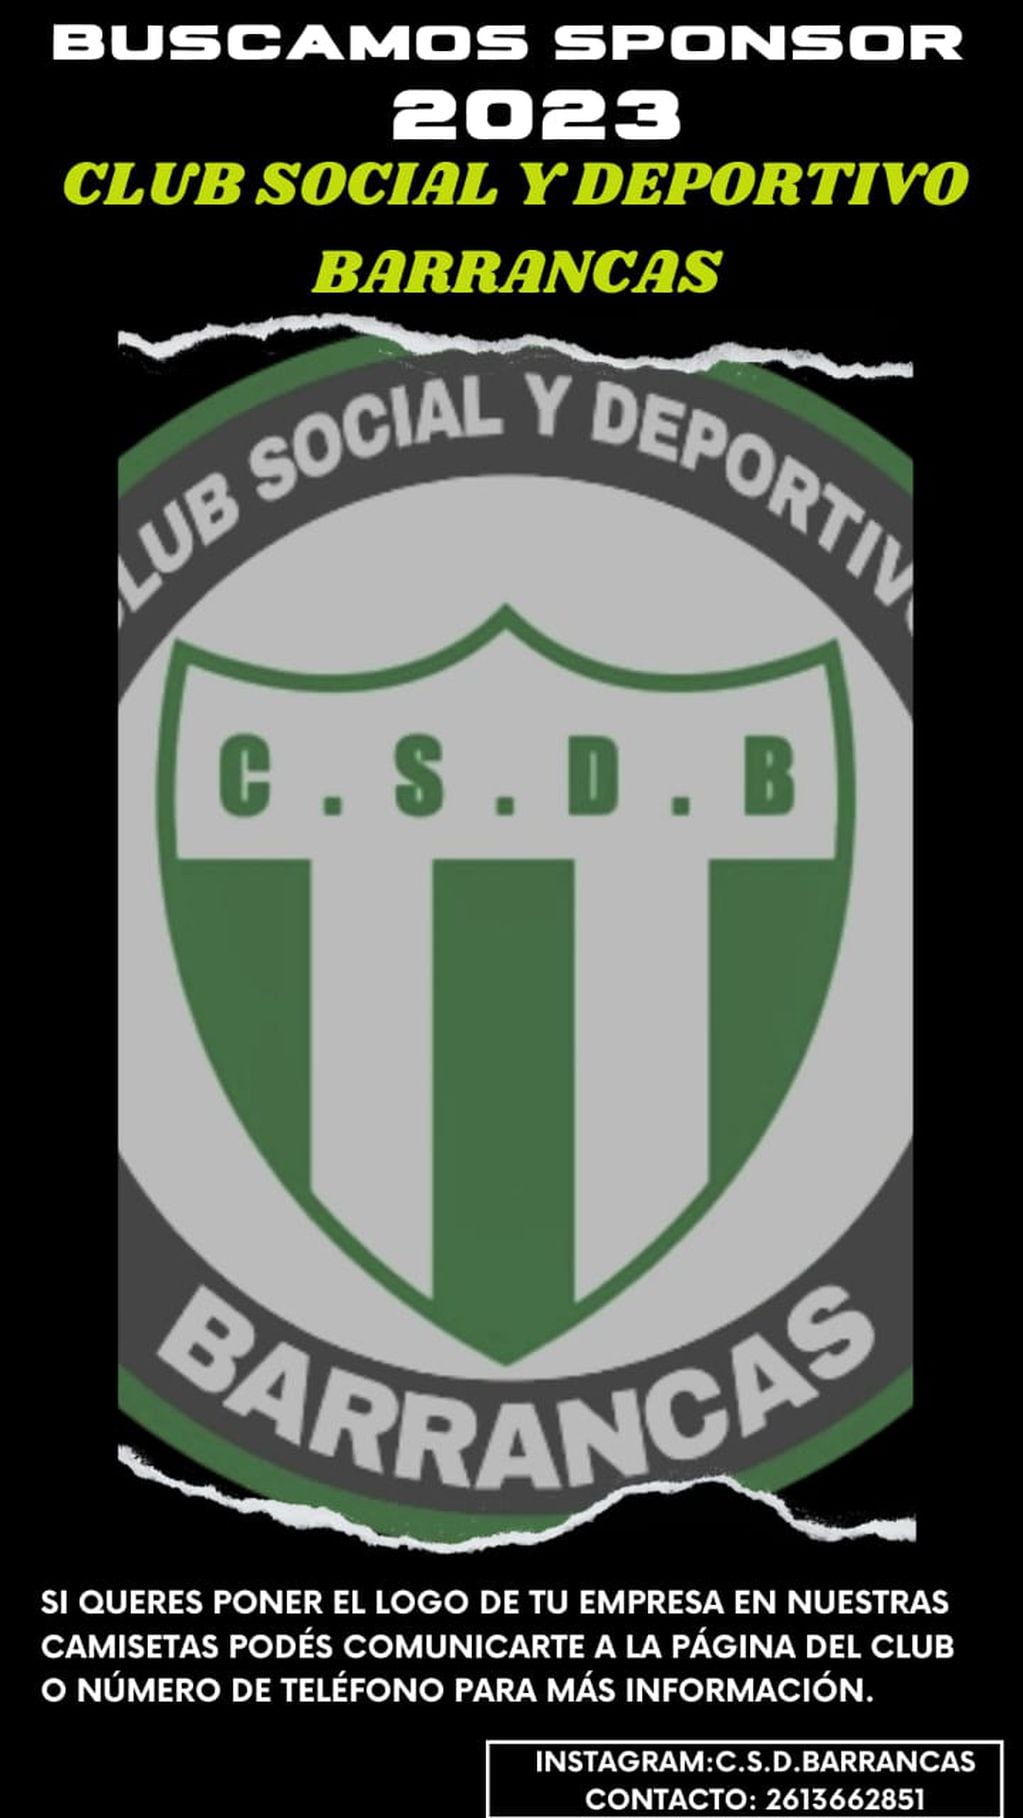 El Club Social y Deportivo Barrancas busca sponsor